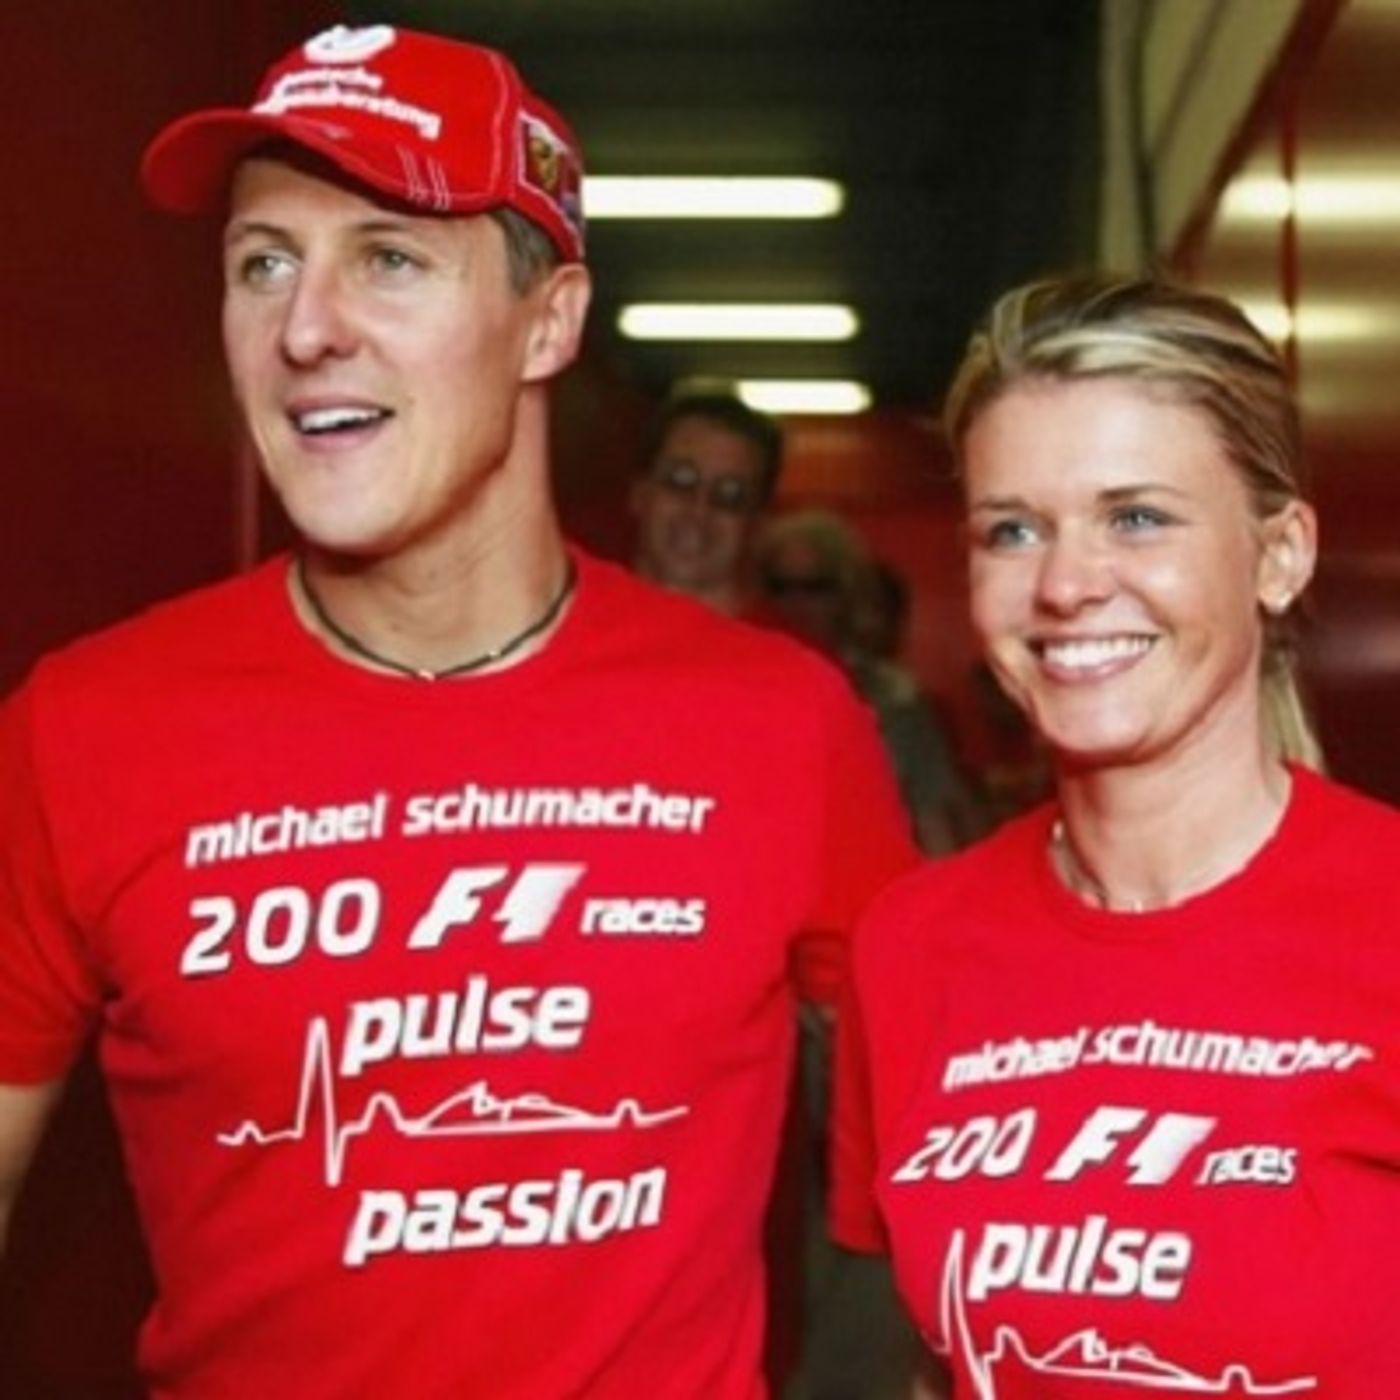 Come la moglie di Schumacher protegge il marito dal gossip e dall'eutanasia